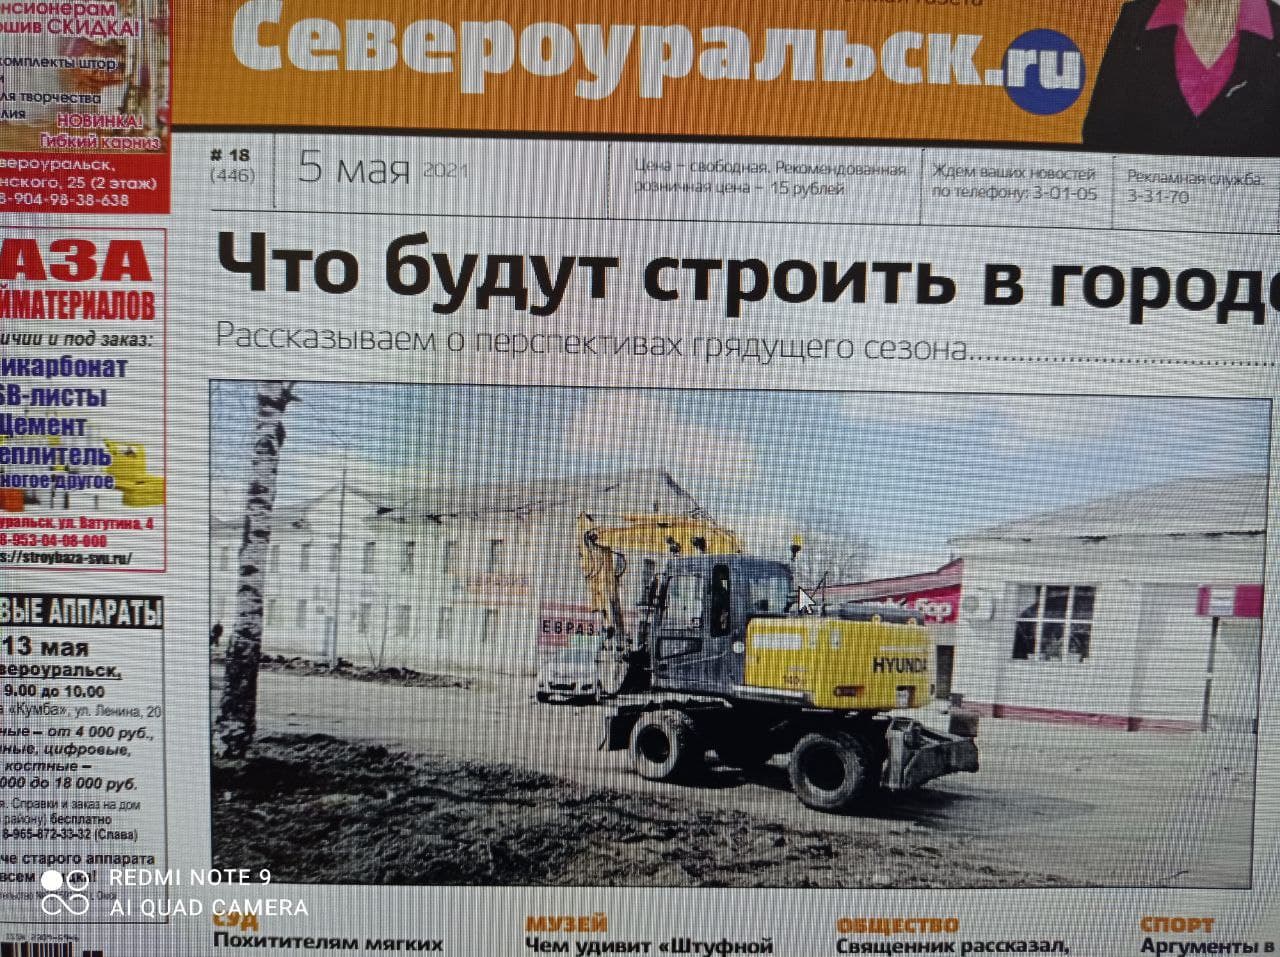 Что строят, на что обиделась председатель Думы, зачем нам ледовый дворец? Об этом и многом другом в новом номере газеты “ПроСевероуральск.ru”